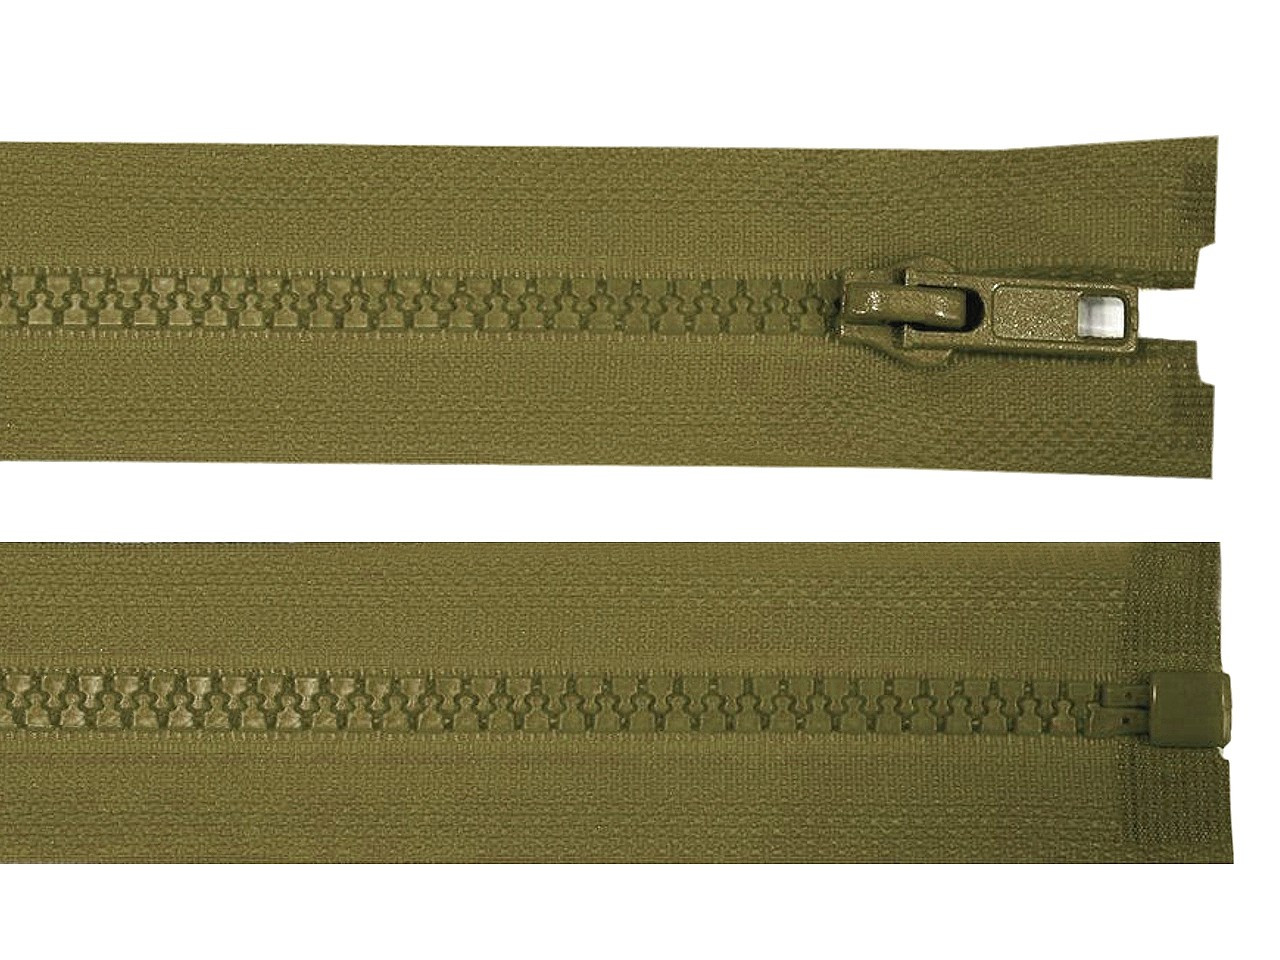 Kostěný zip šíře 5 mm délka 70 cm bundový, barva 298 zelená khaki tmavá